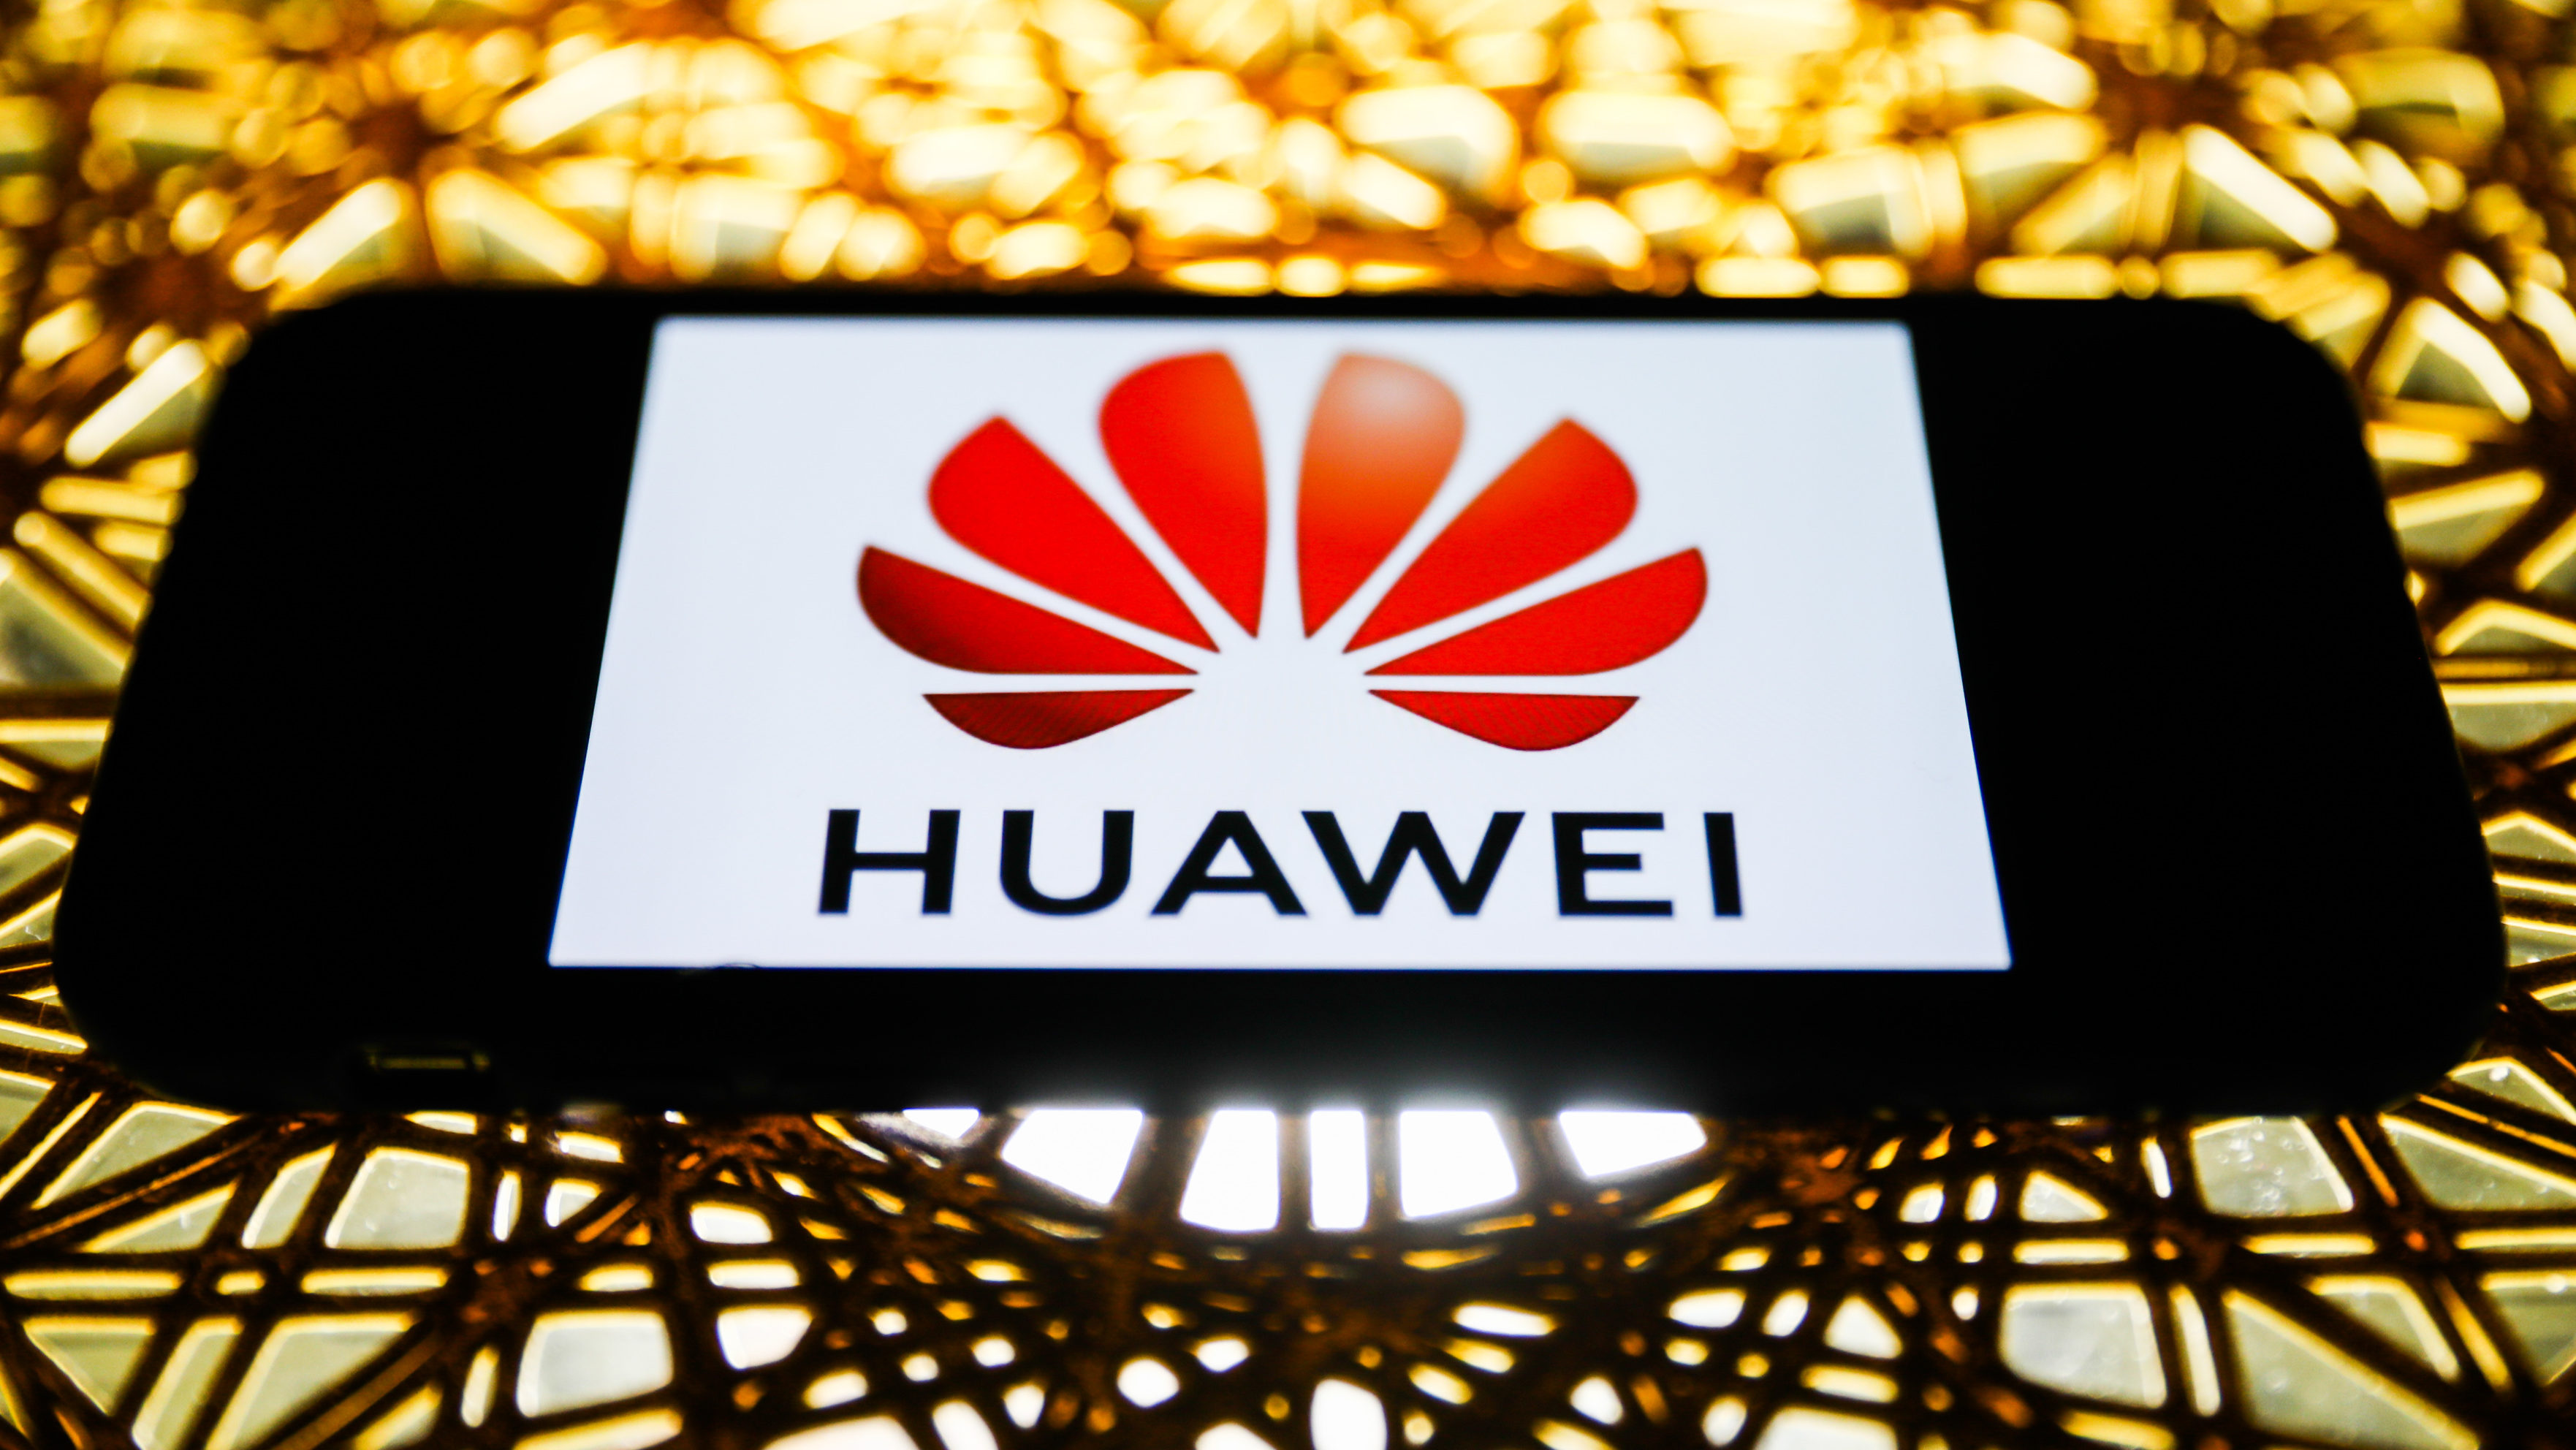 Holland sajtó: a Huawei lehallgathatta egy távközlési vállalat ügyfeleit